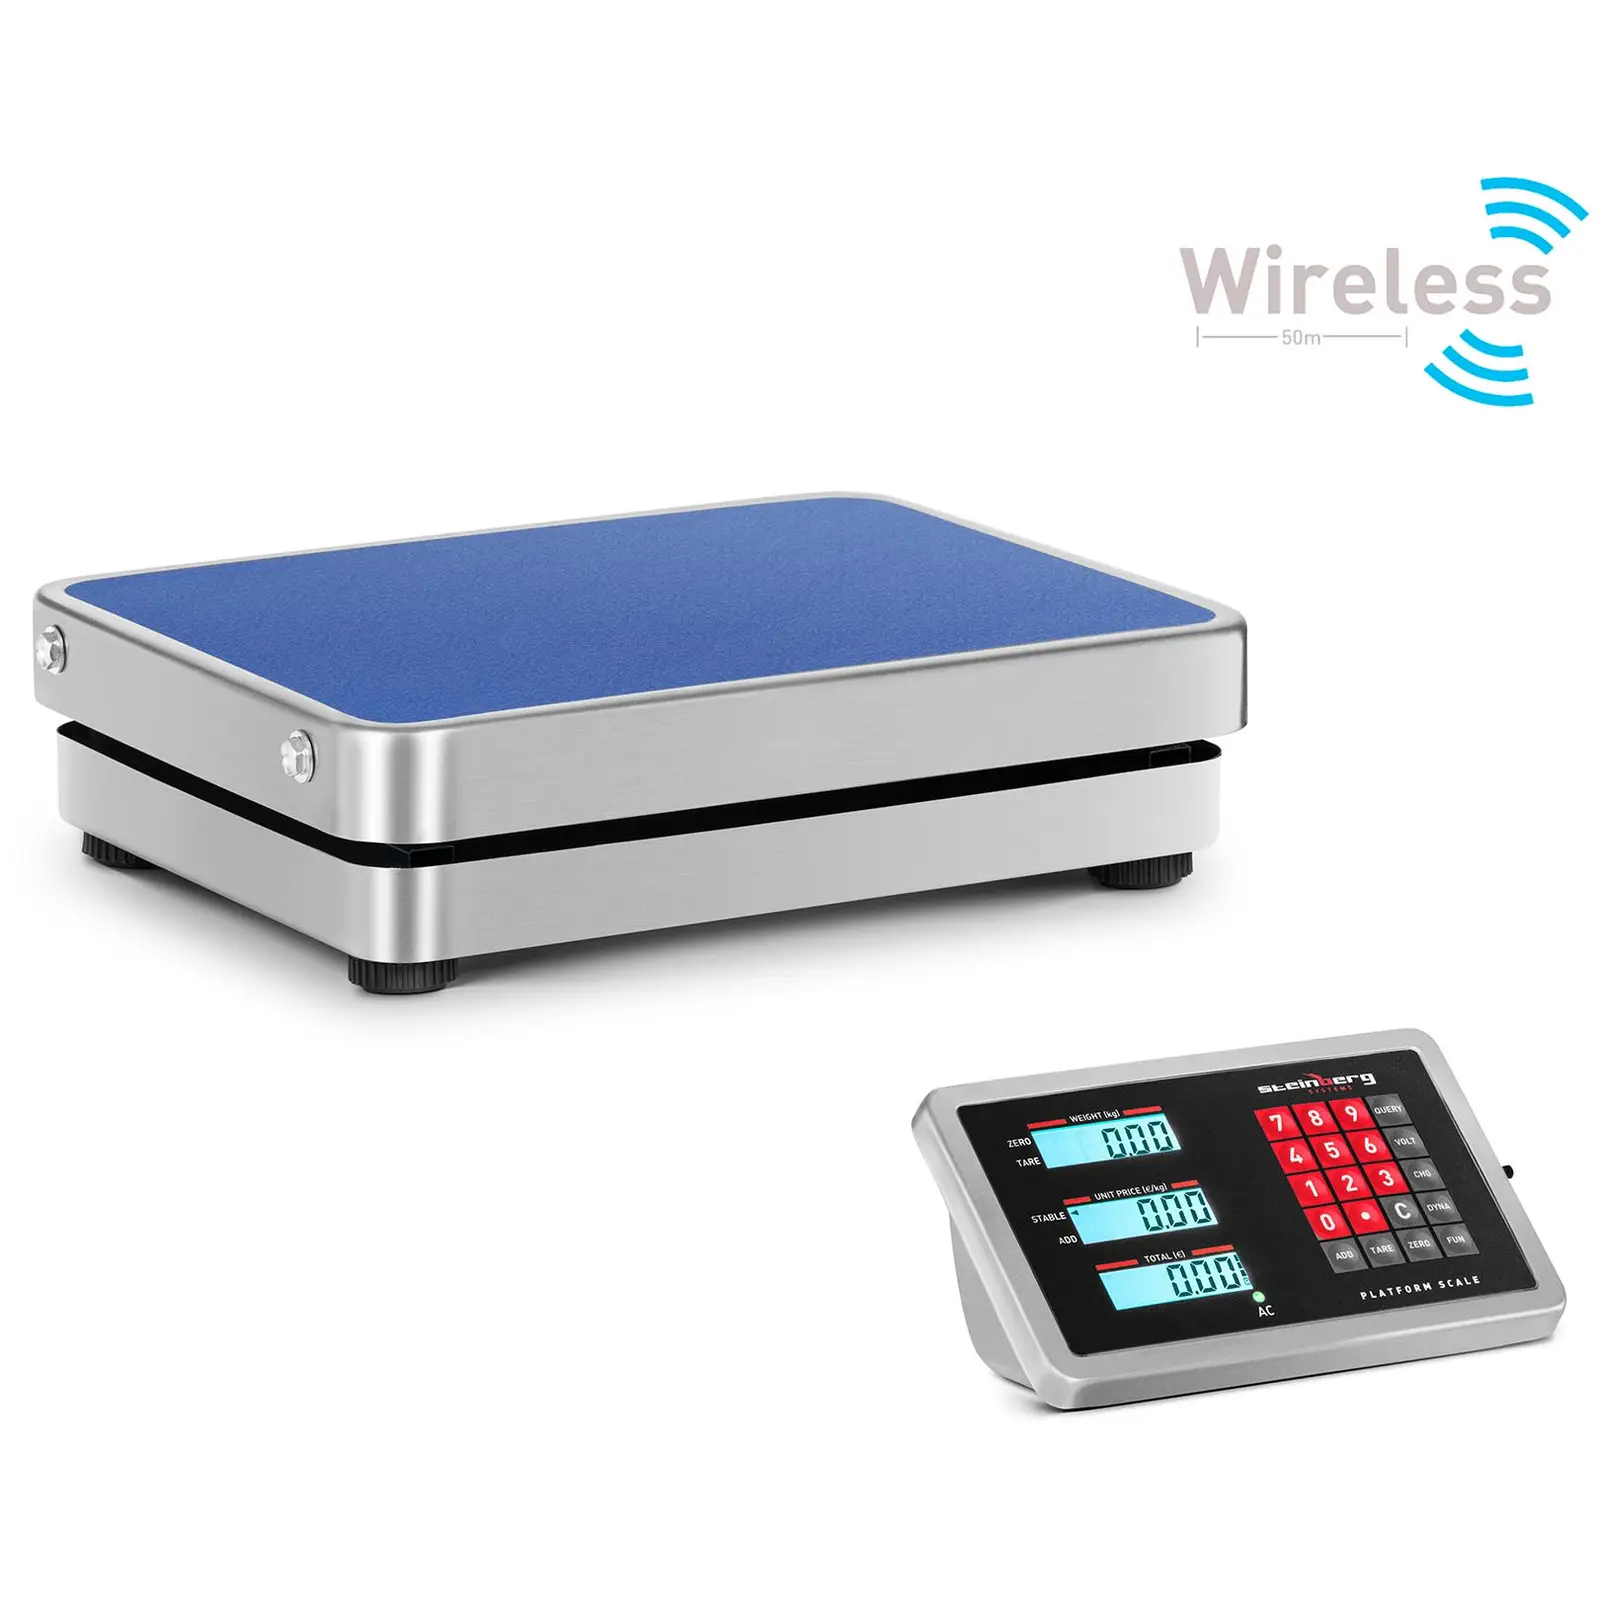 Platforma Scale - wireless - 0.2-60 kg - wireless